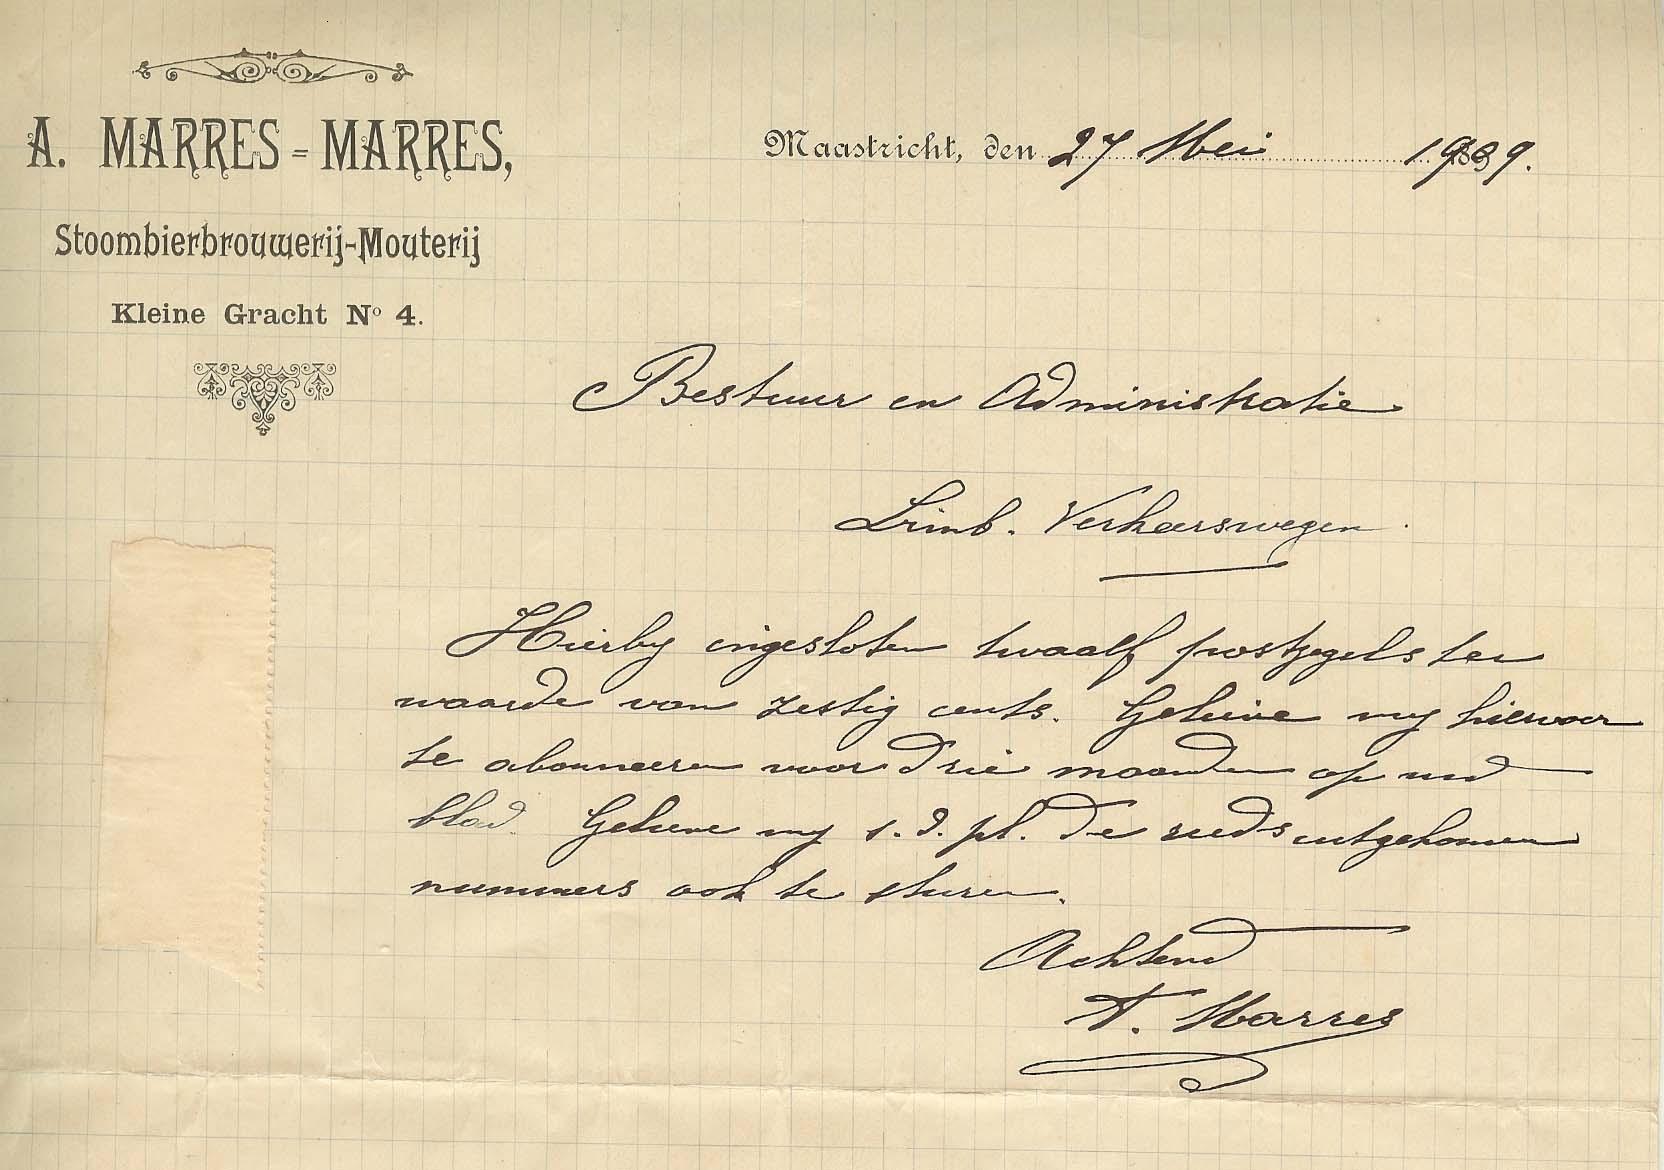 Brief brouwerij Aug. Marres-Marres 27 mei 1909
Foto collectie Wil Lem.